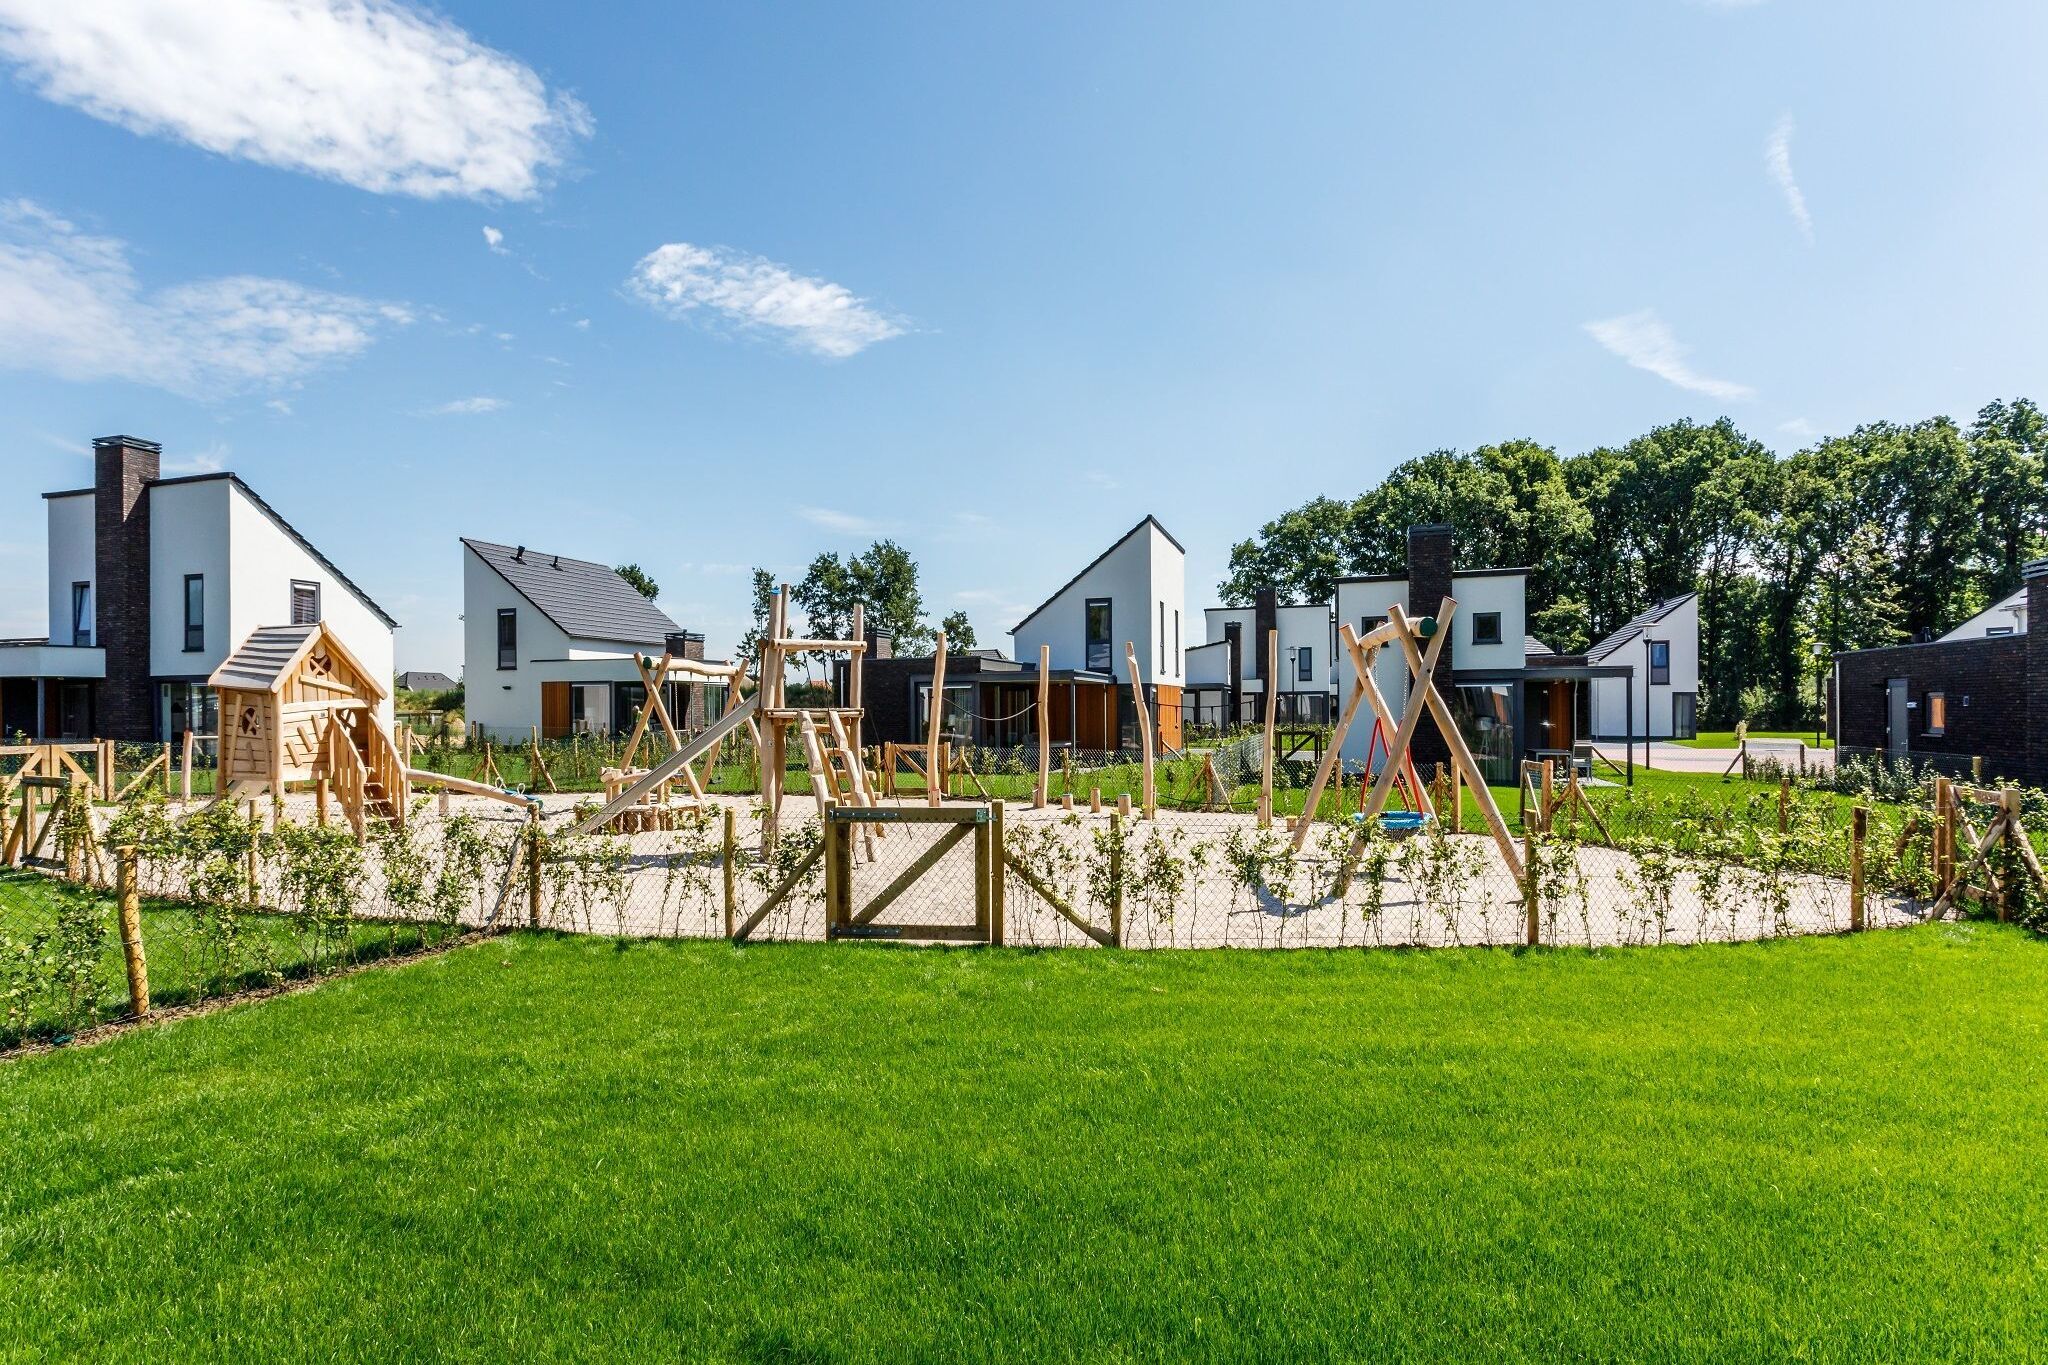 Villa with med children's room in Limburg